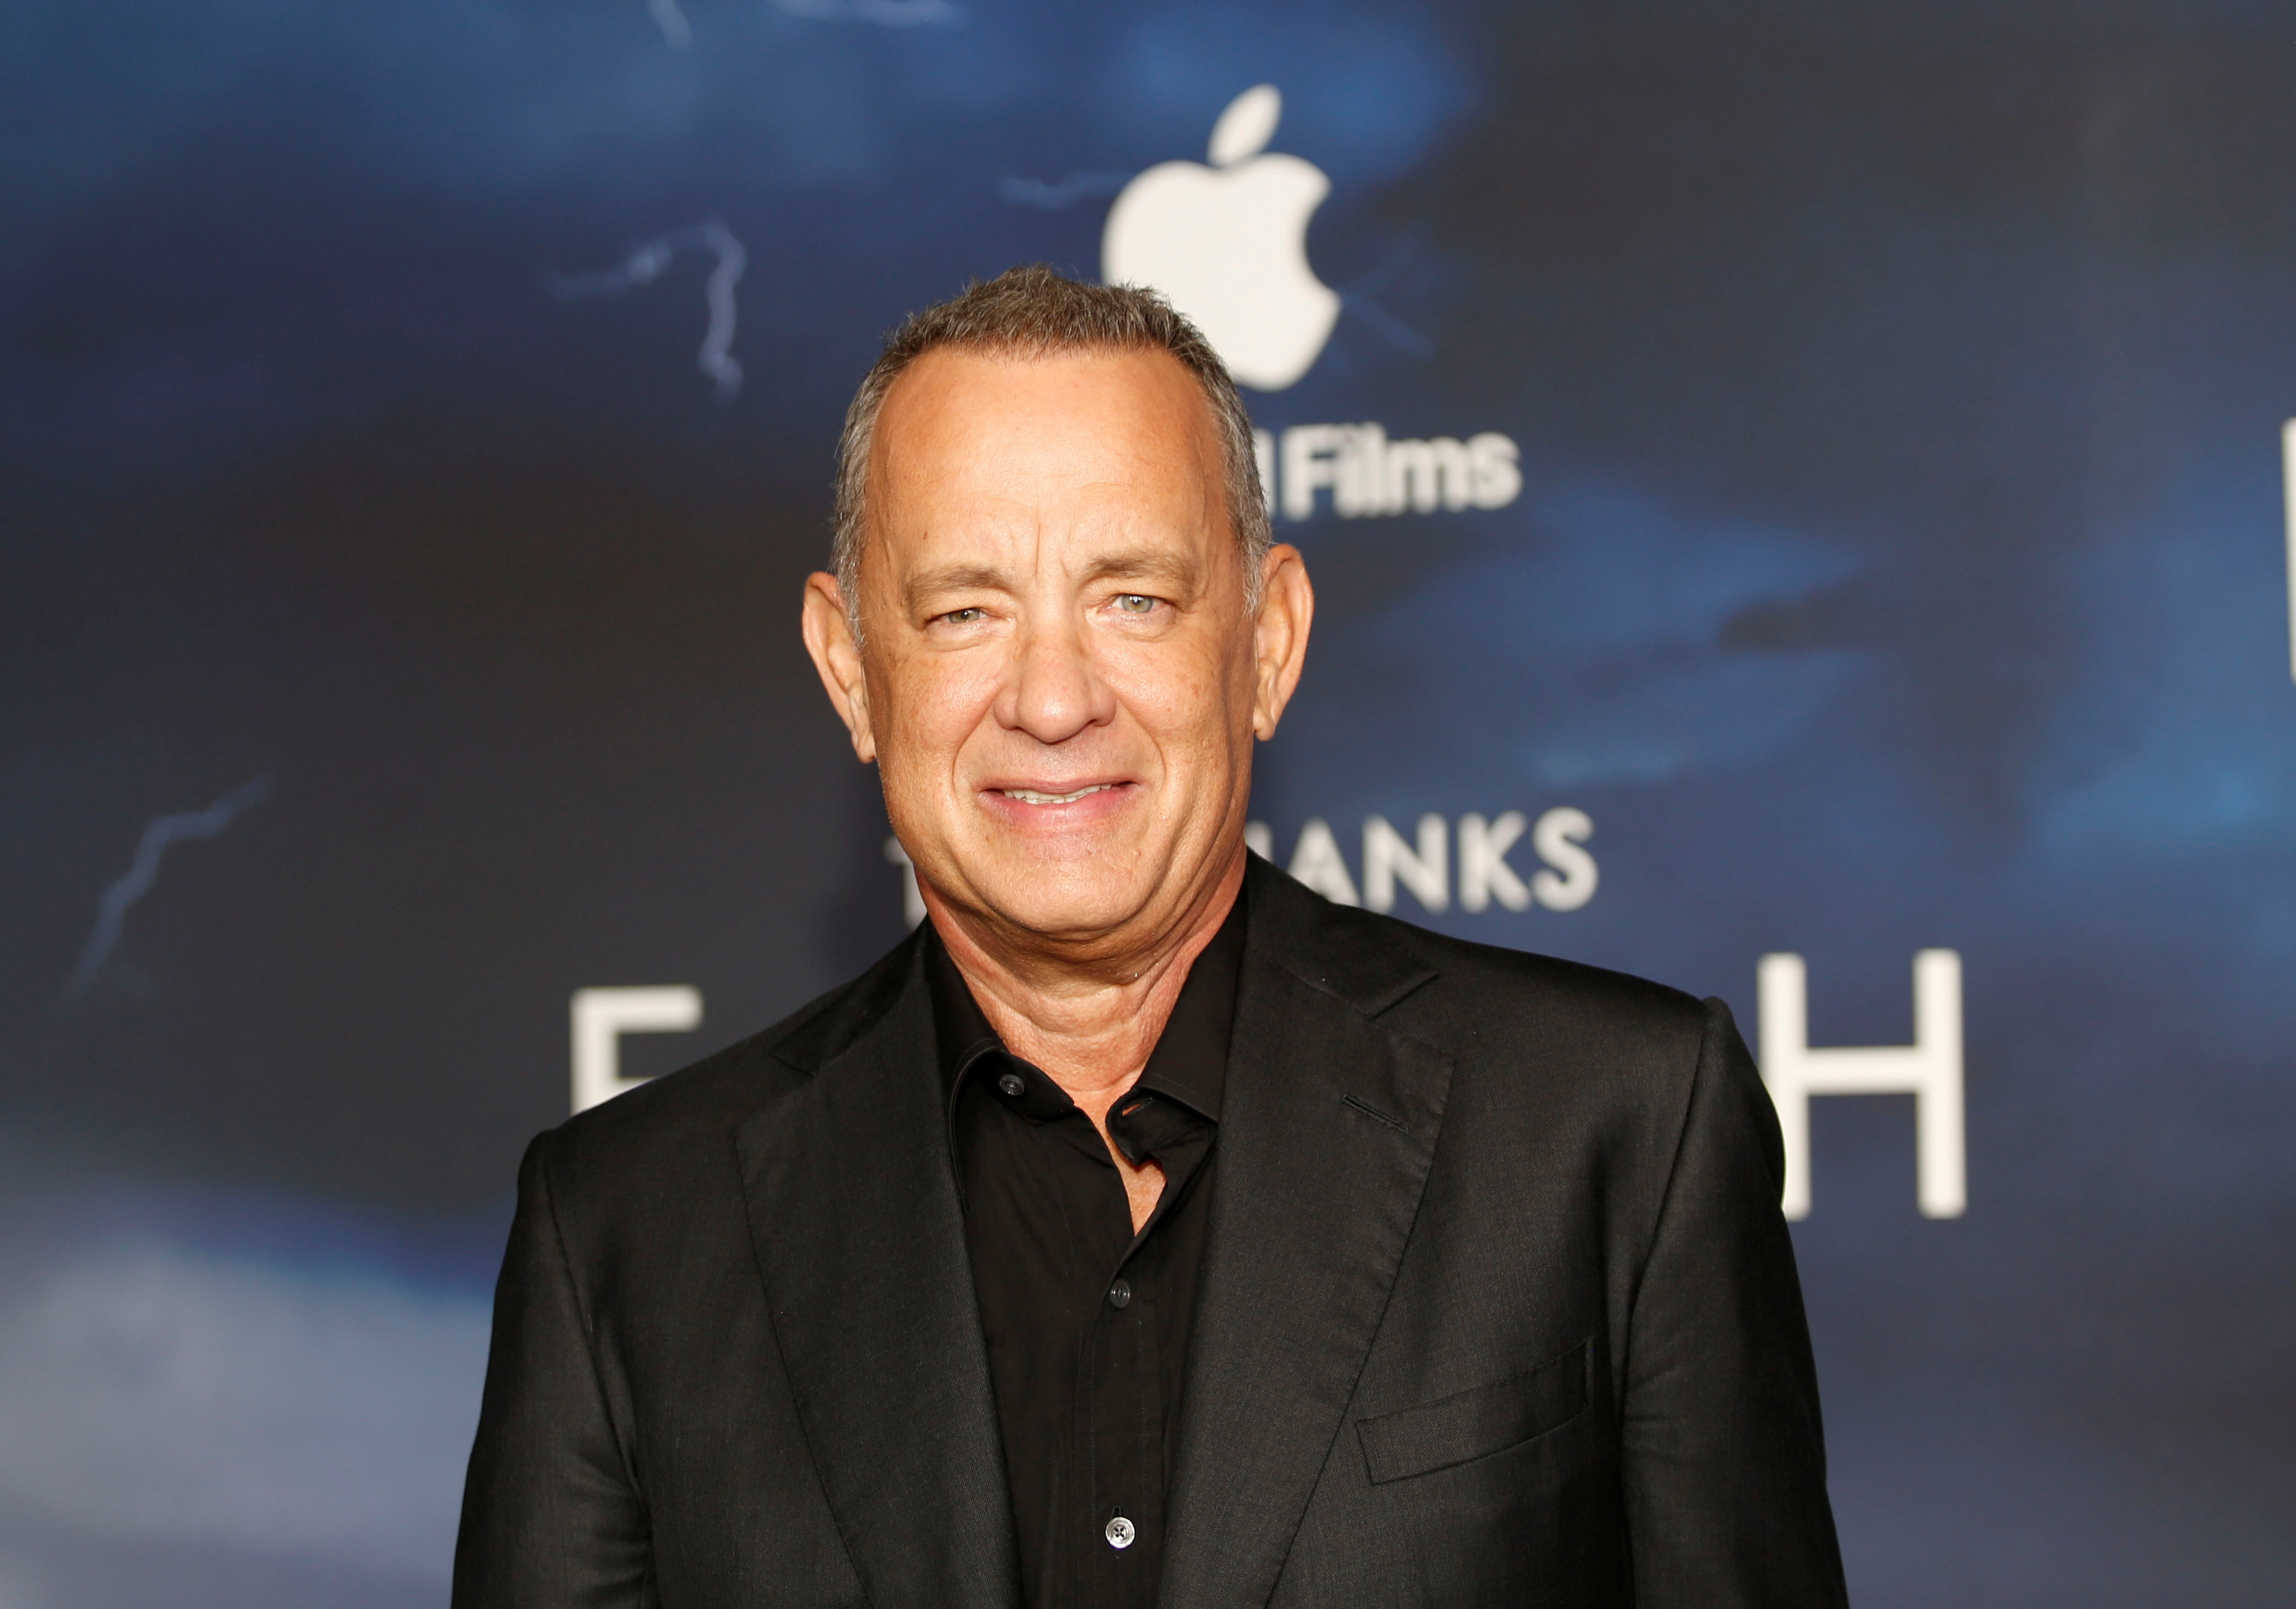 Tom Hanks en la premier de la pelcula "Finch", este martes en Los ngeles.